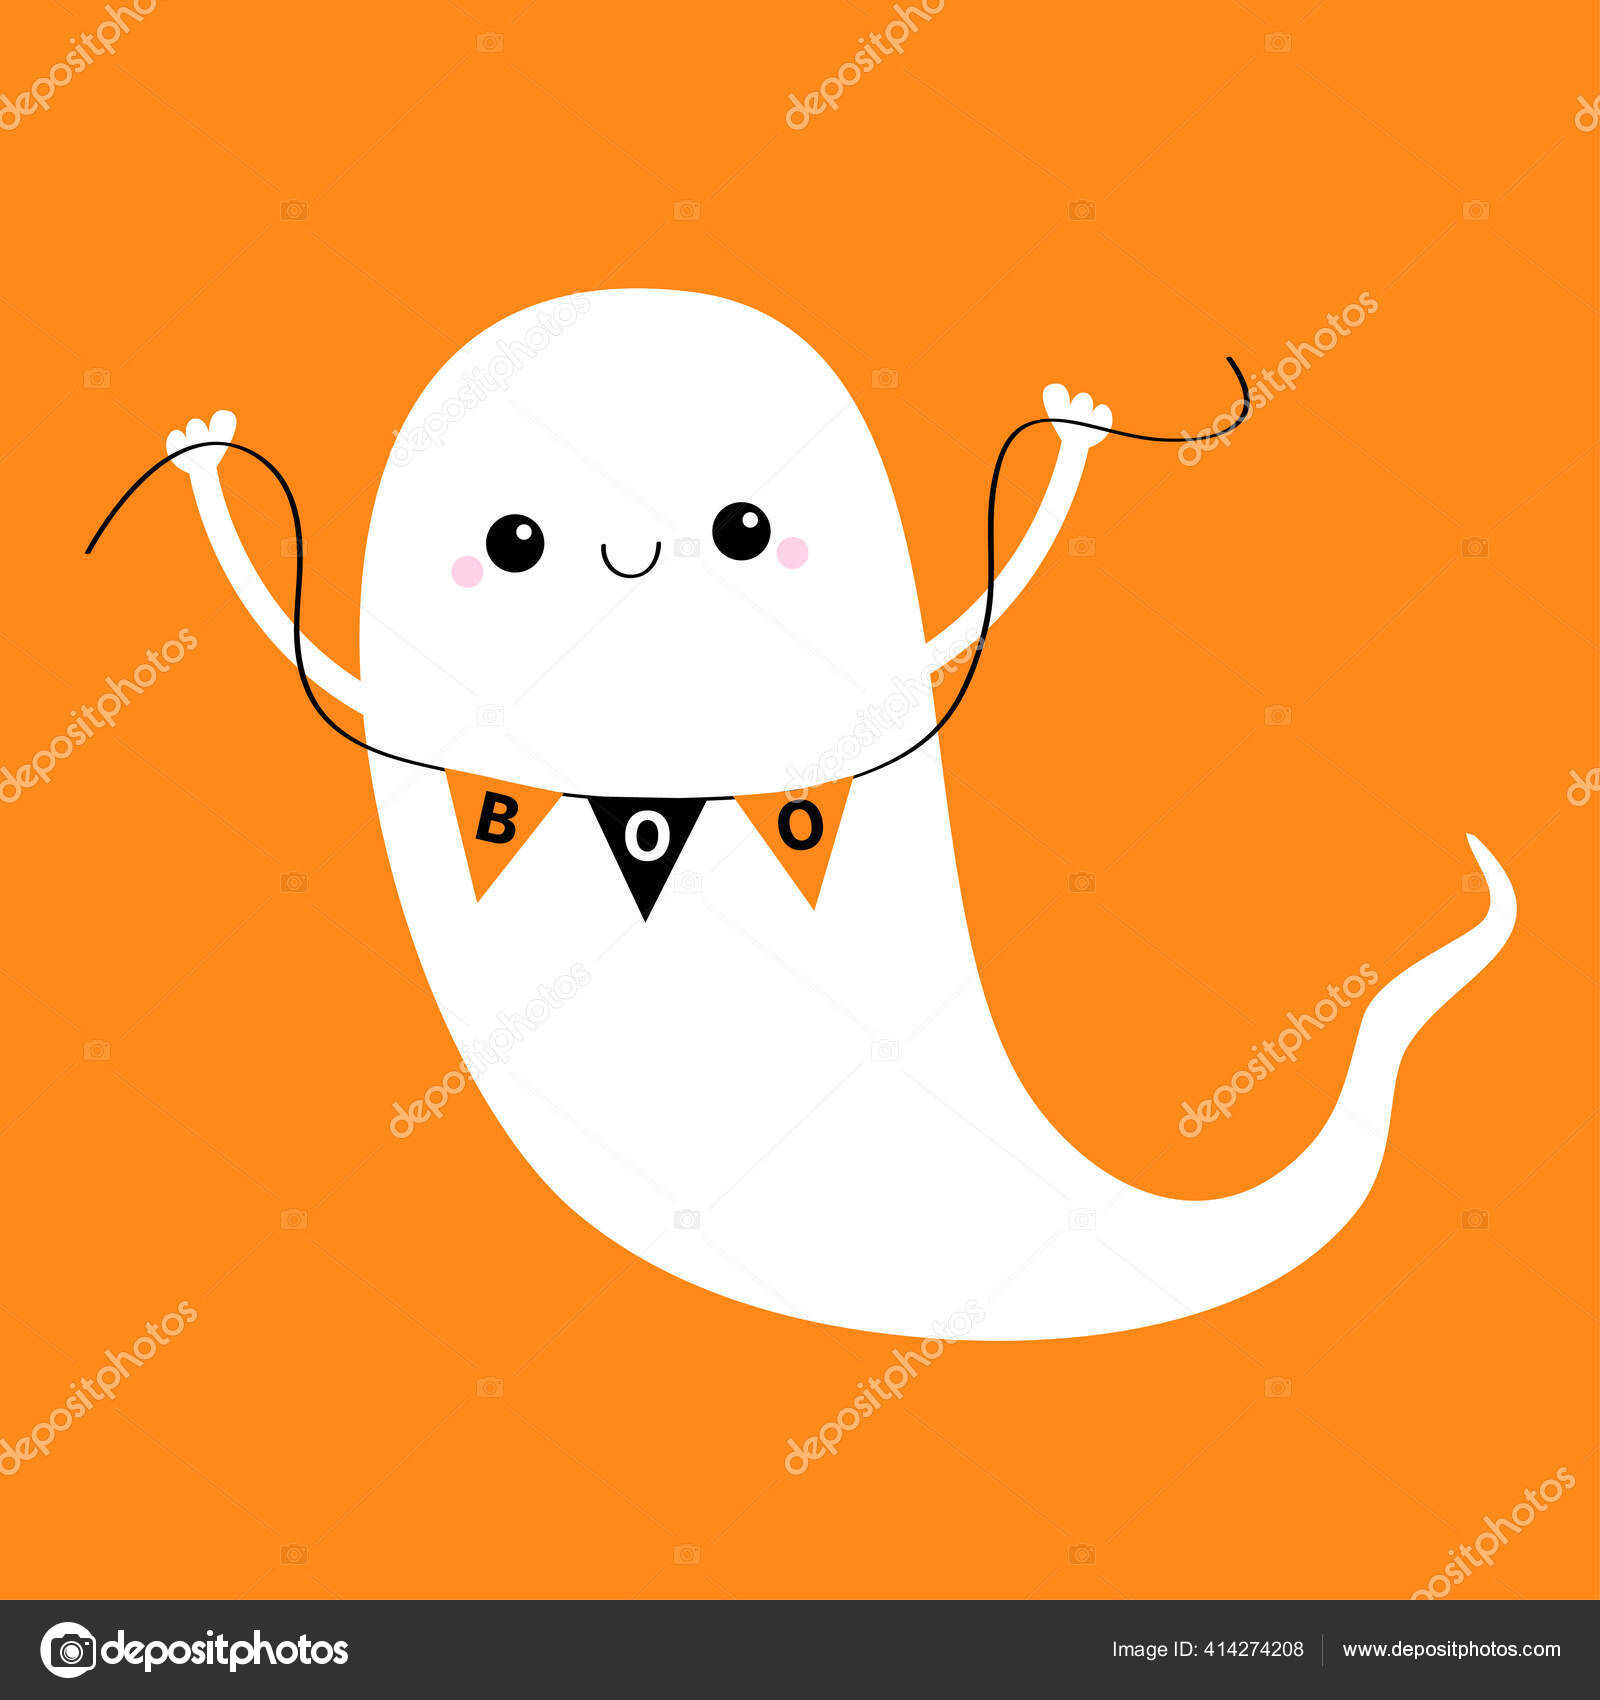 Um desenho animado de um fantasma com uma cara assustadora.